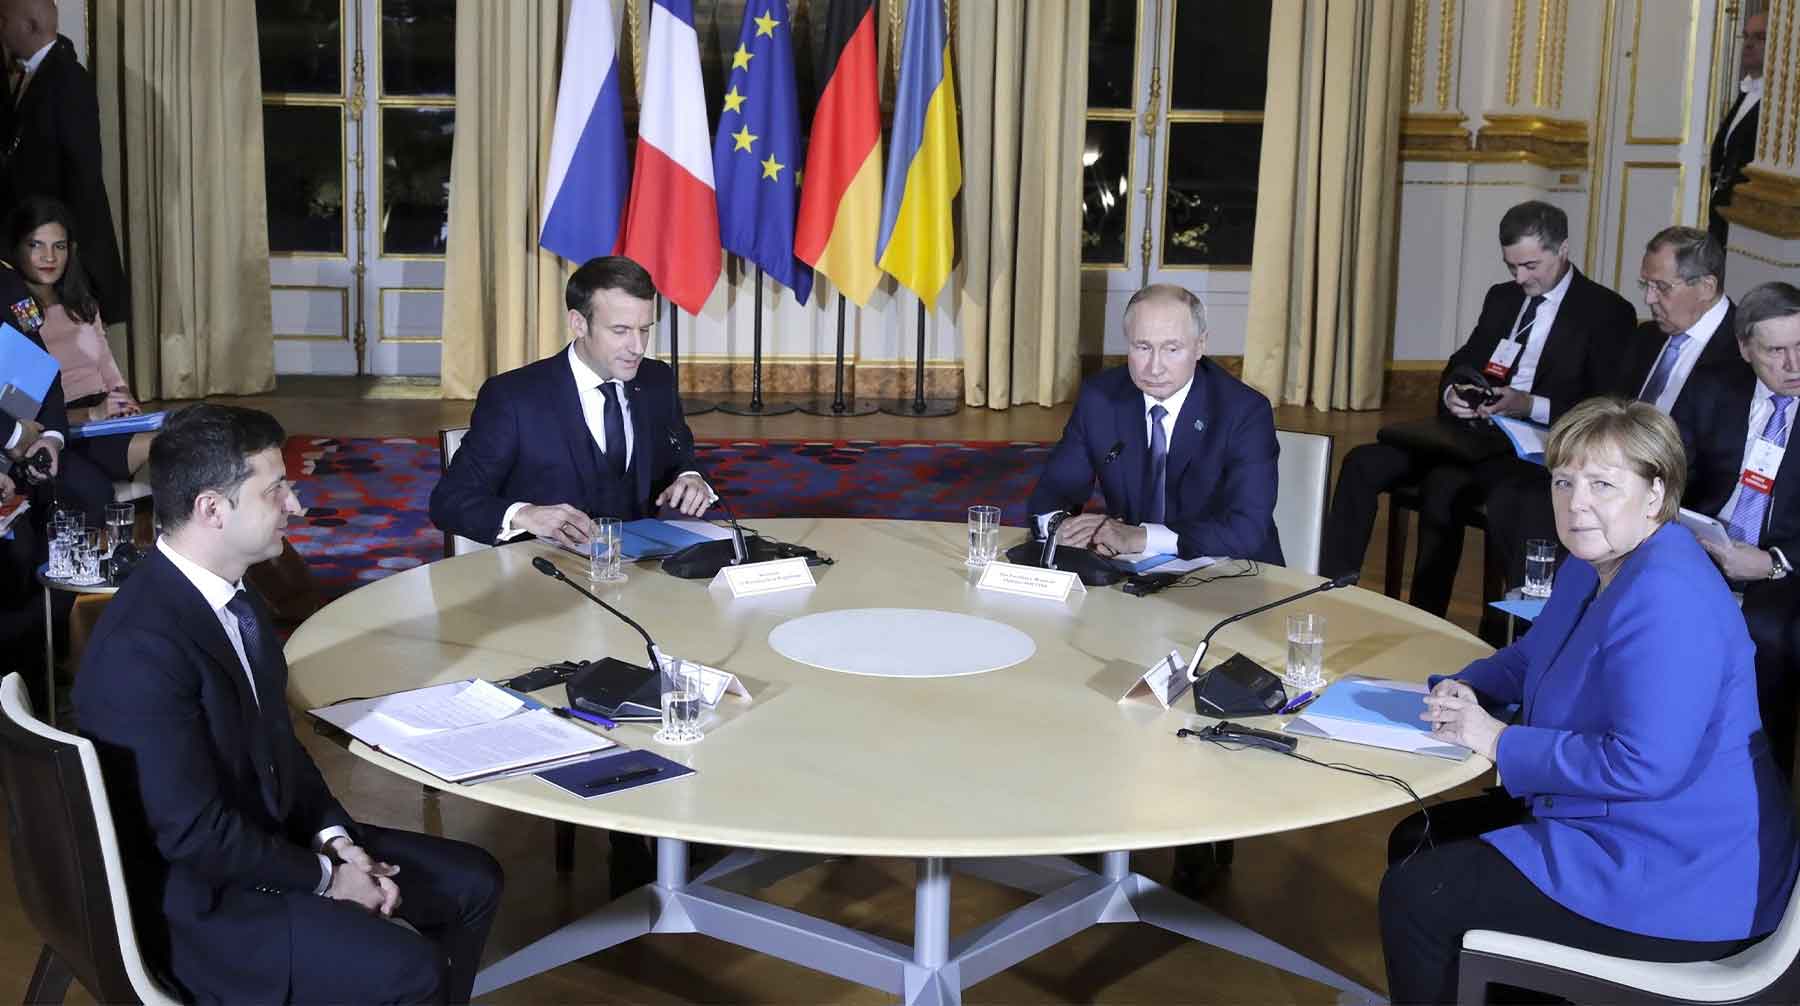 Лидеры России, Франции, Германии и Украины выступили за установление полноценного перемирия в Донбассе до конца 2019 года Фото: © GLOBAL LOOK press / Kremlin Pool / Alexei Nikolsky